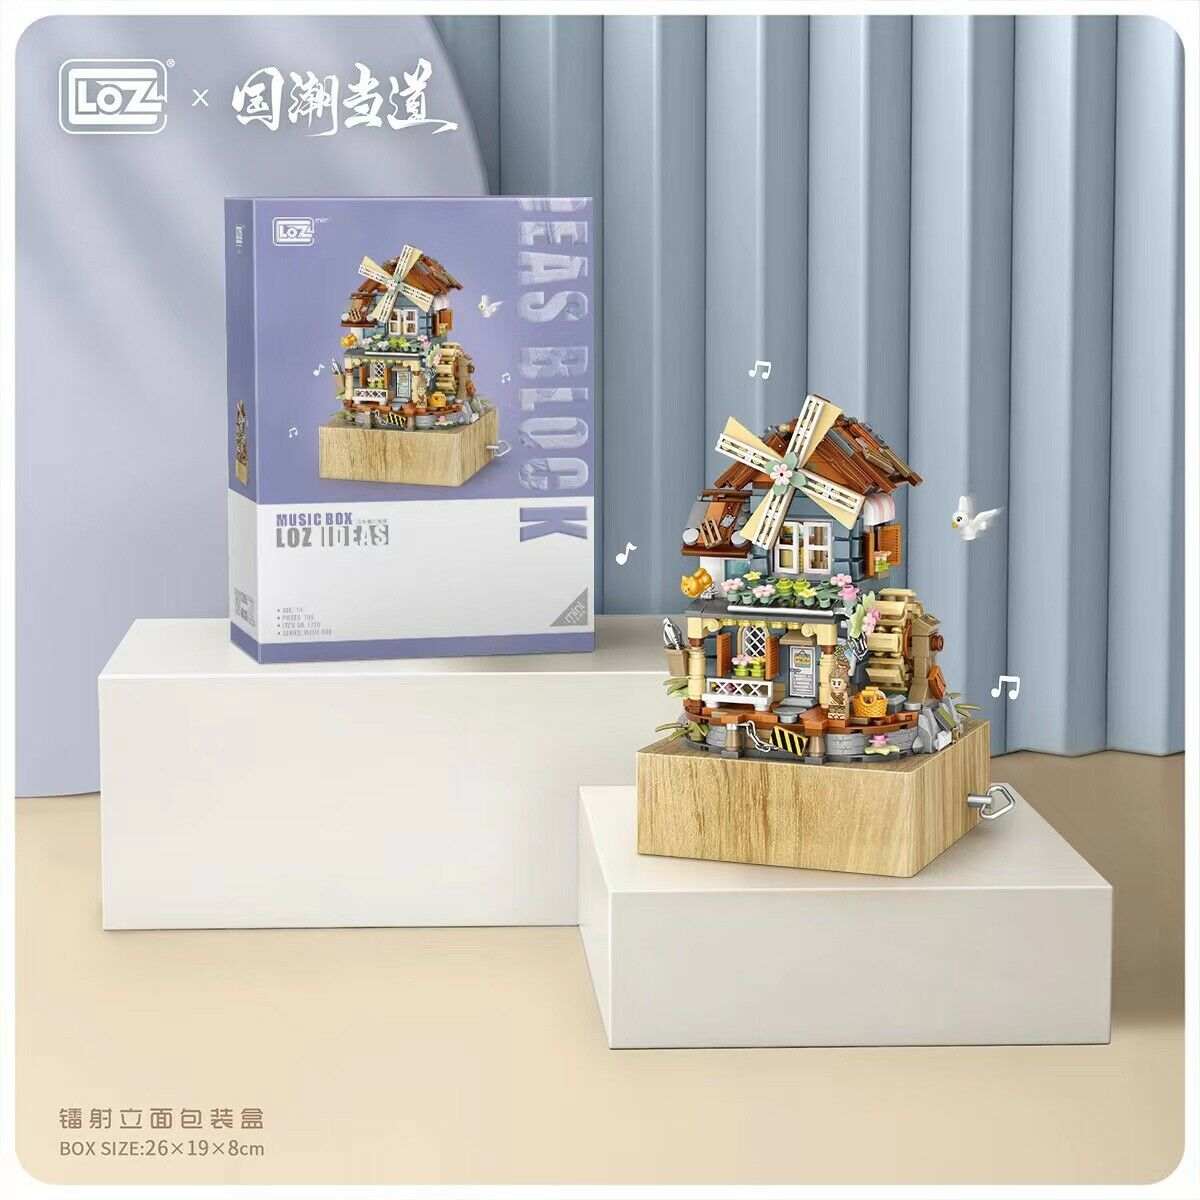 LOZ Mini Building Blocks Ideas Windmill Music Box (1239)